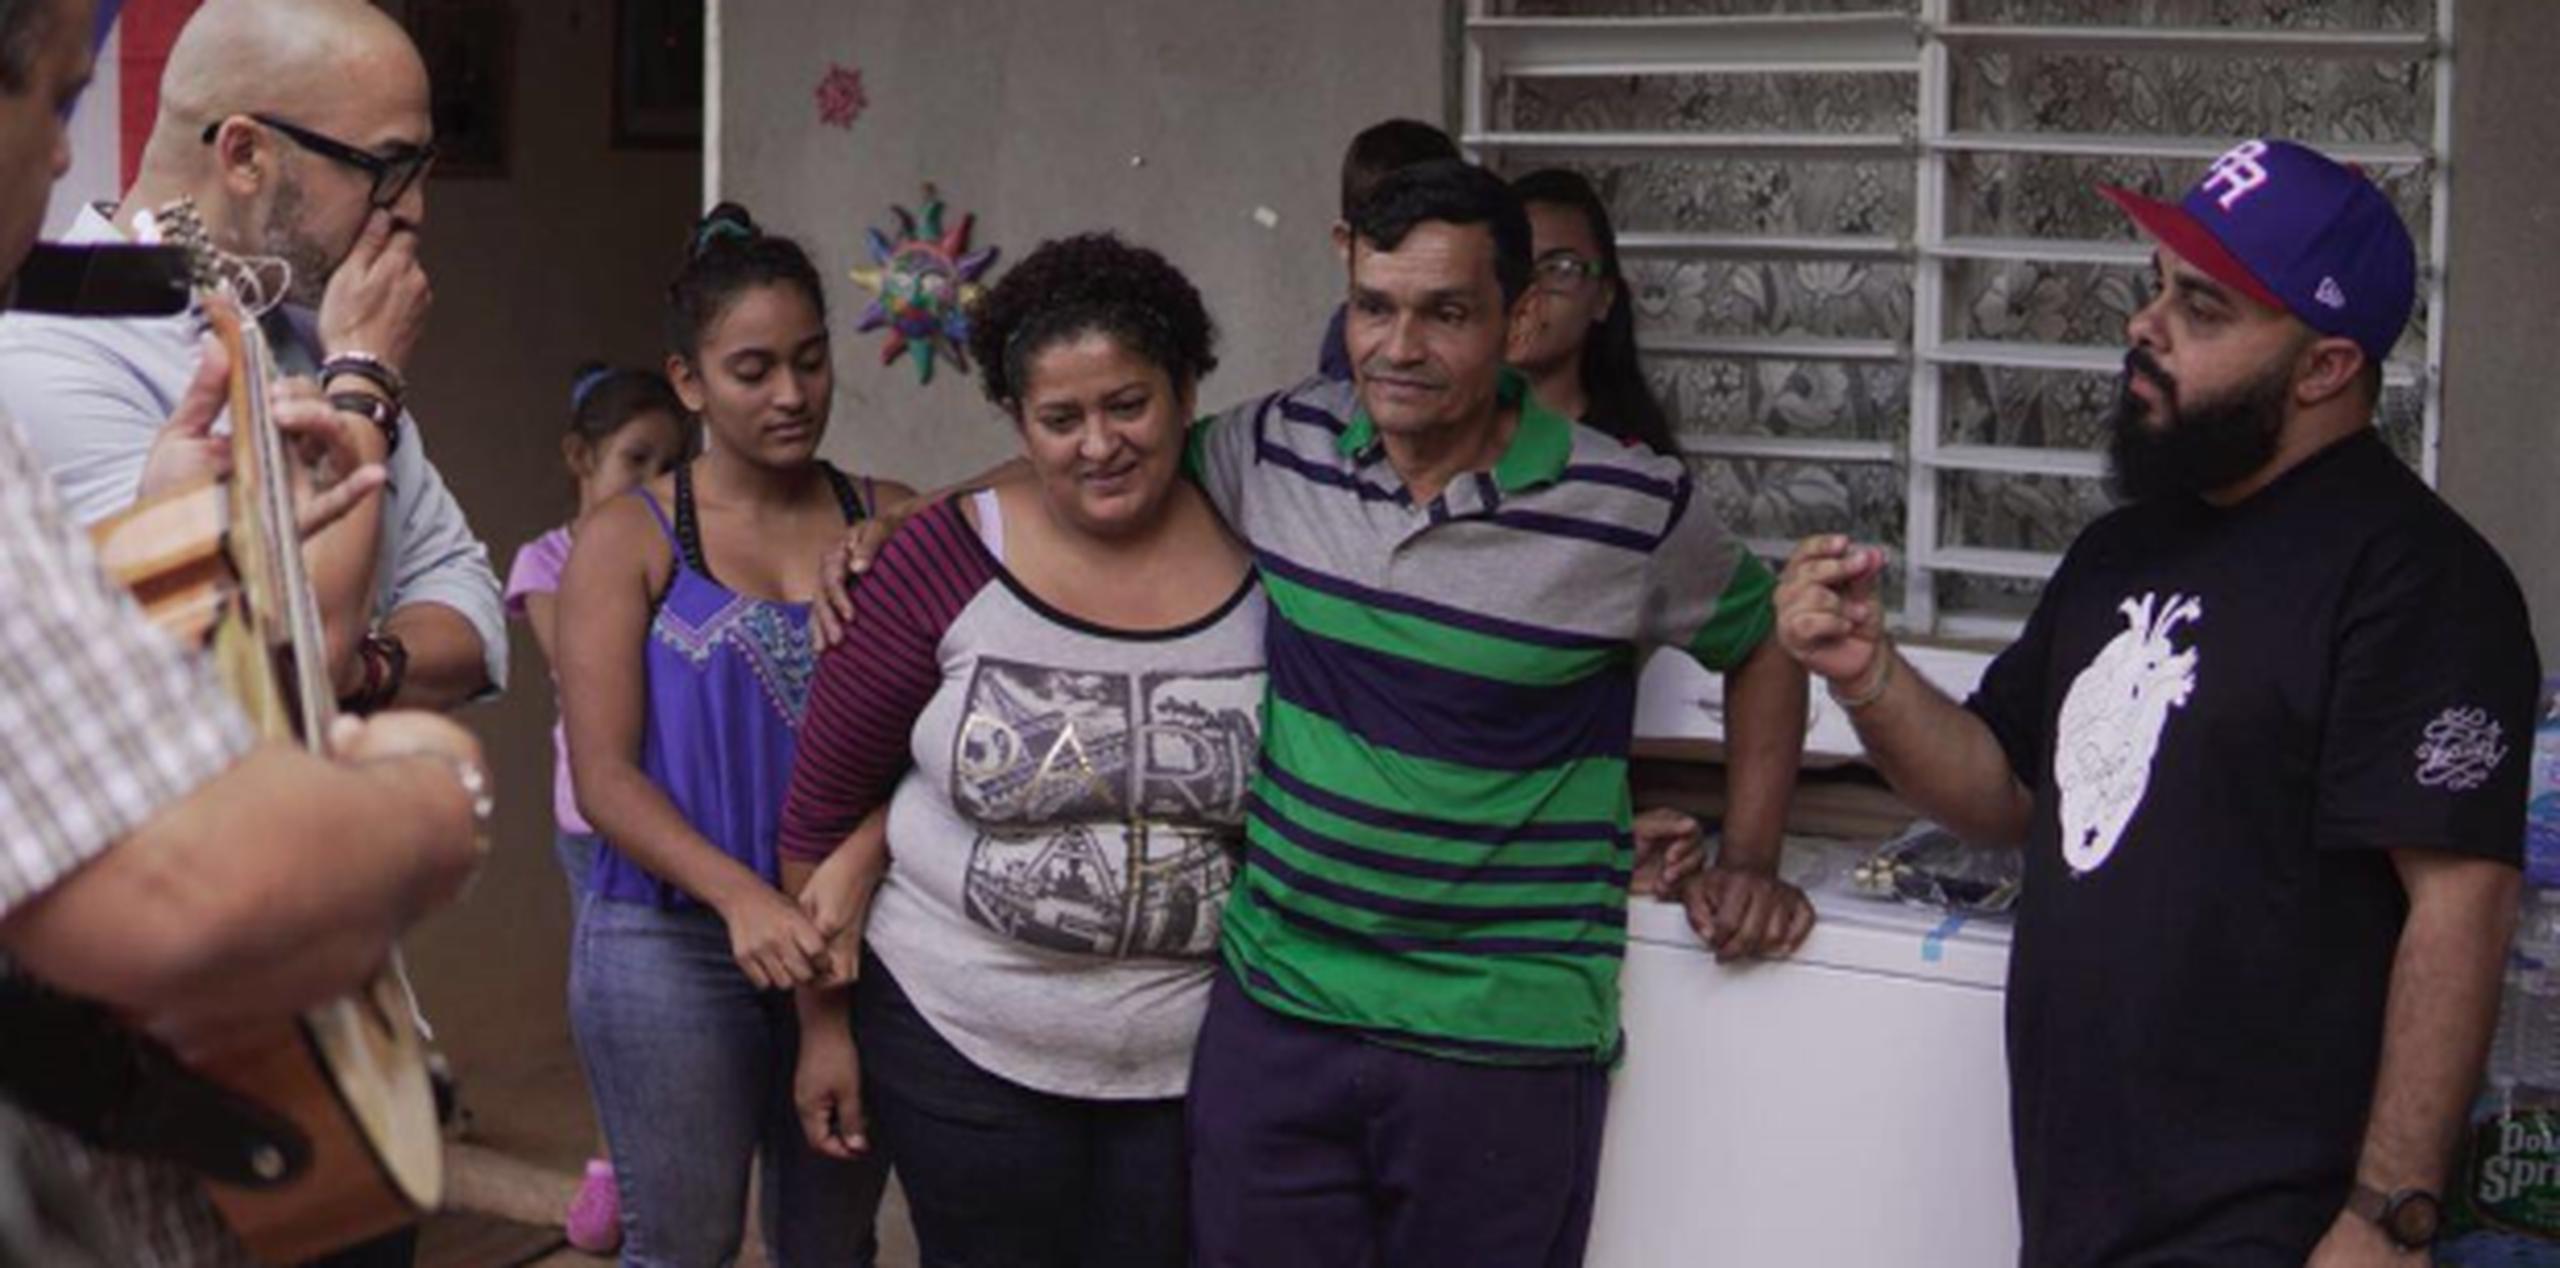 Prodigio Claudio y Julio César Sanabria llegaron hasta el hogar de Edison Rivera y su esposa, al centro, para participar de la iniciativa de Maed Torres, de Ruteando mi Isla. (Suministrada)